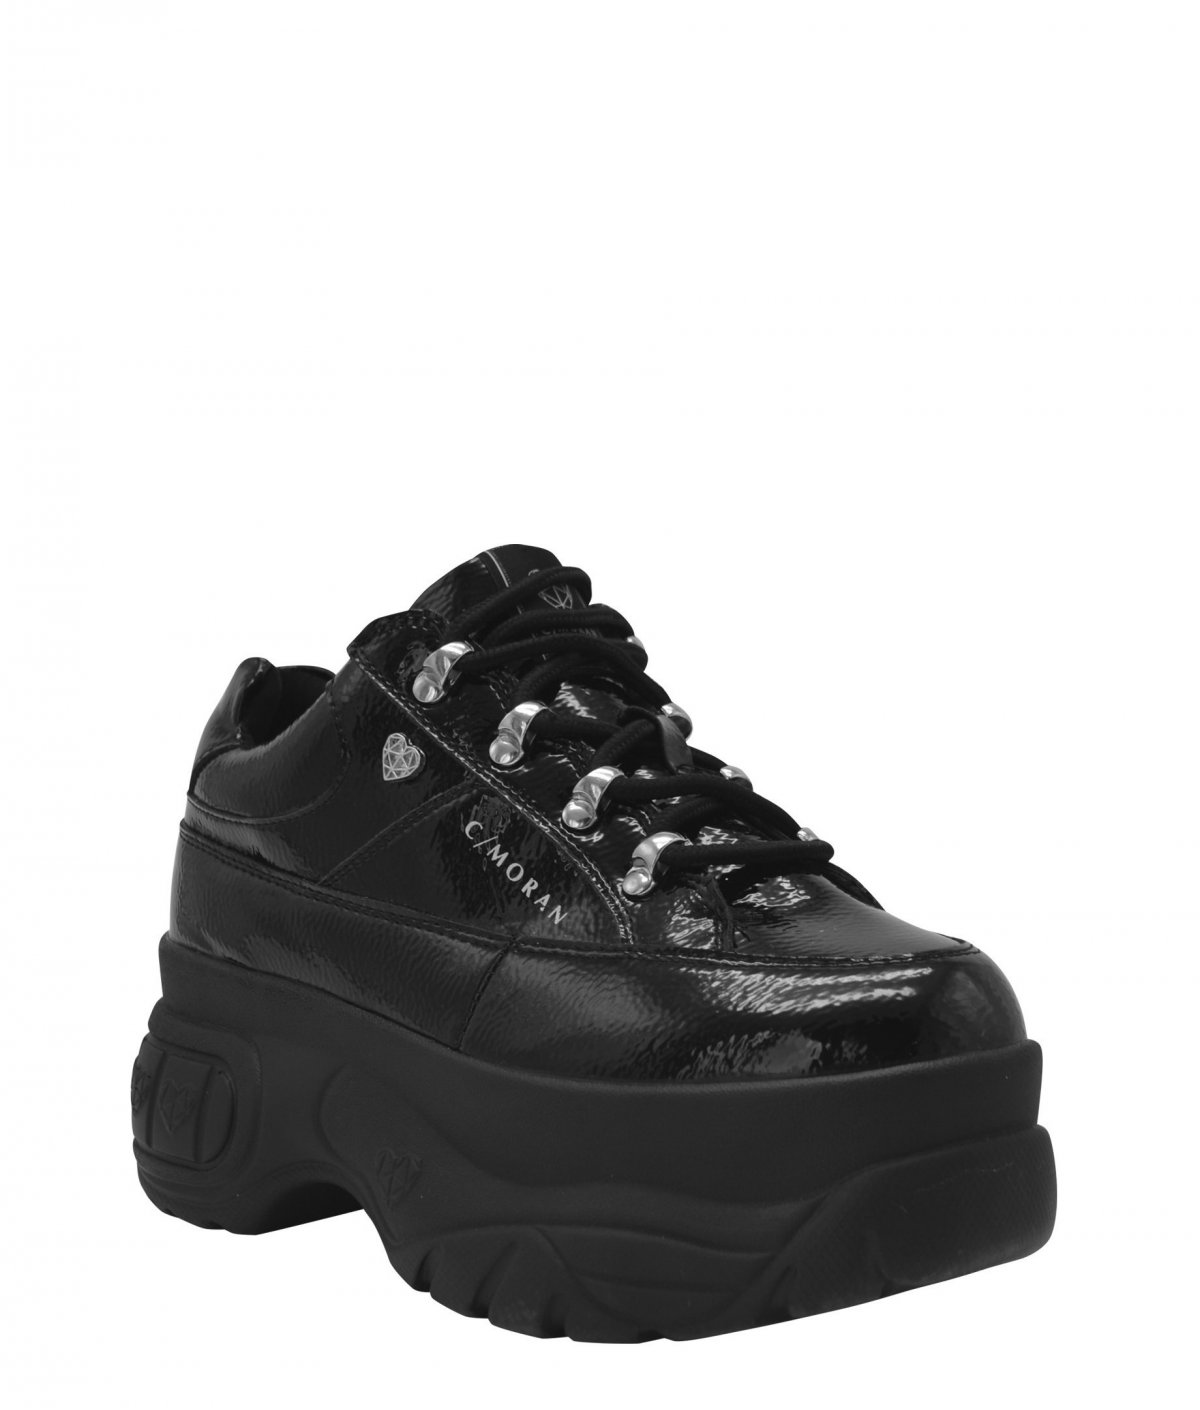 Zapatillas Mujer 174 Reno : En nuestra tienda online de zapatillas de